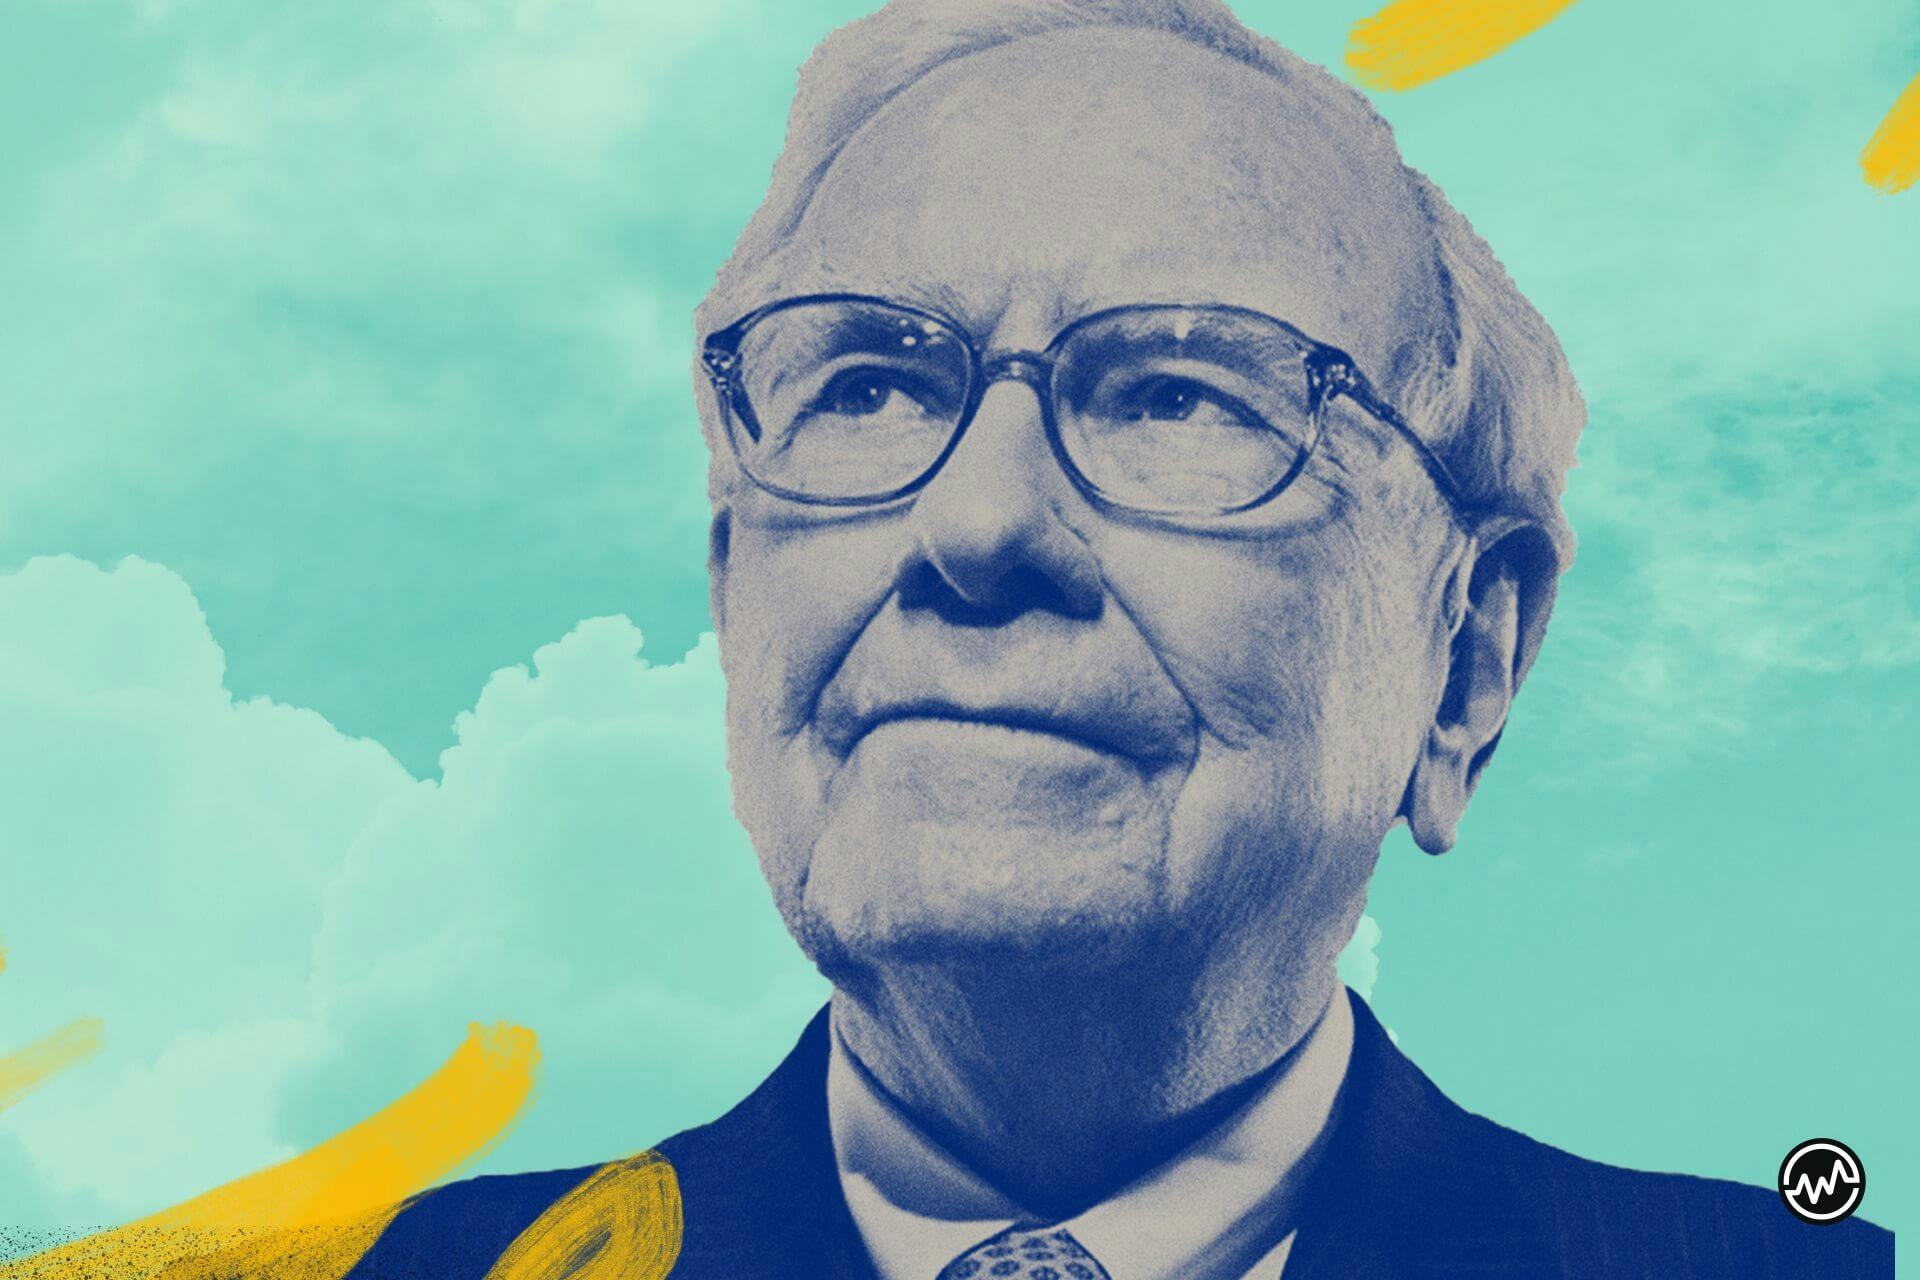 råd från Warren Buffet om hur man blir en investerare